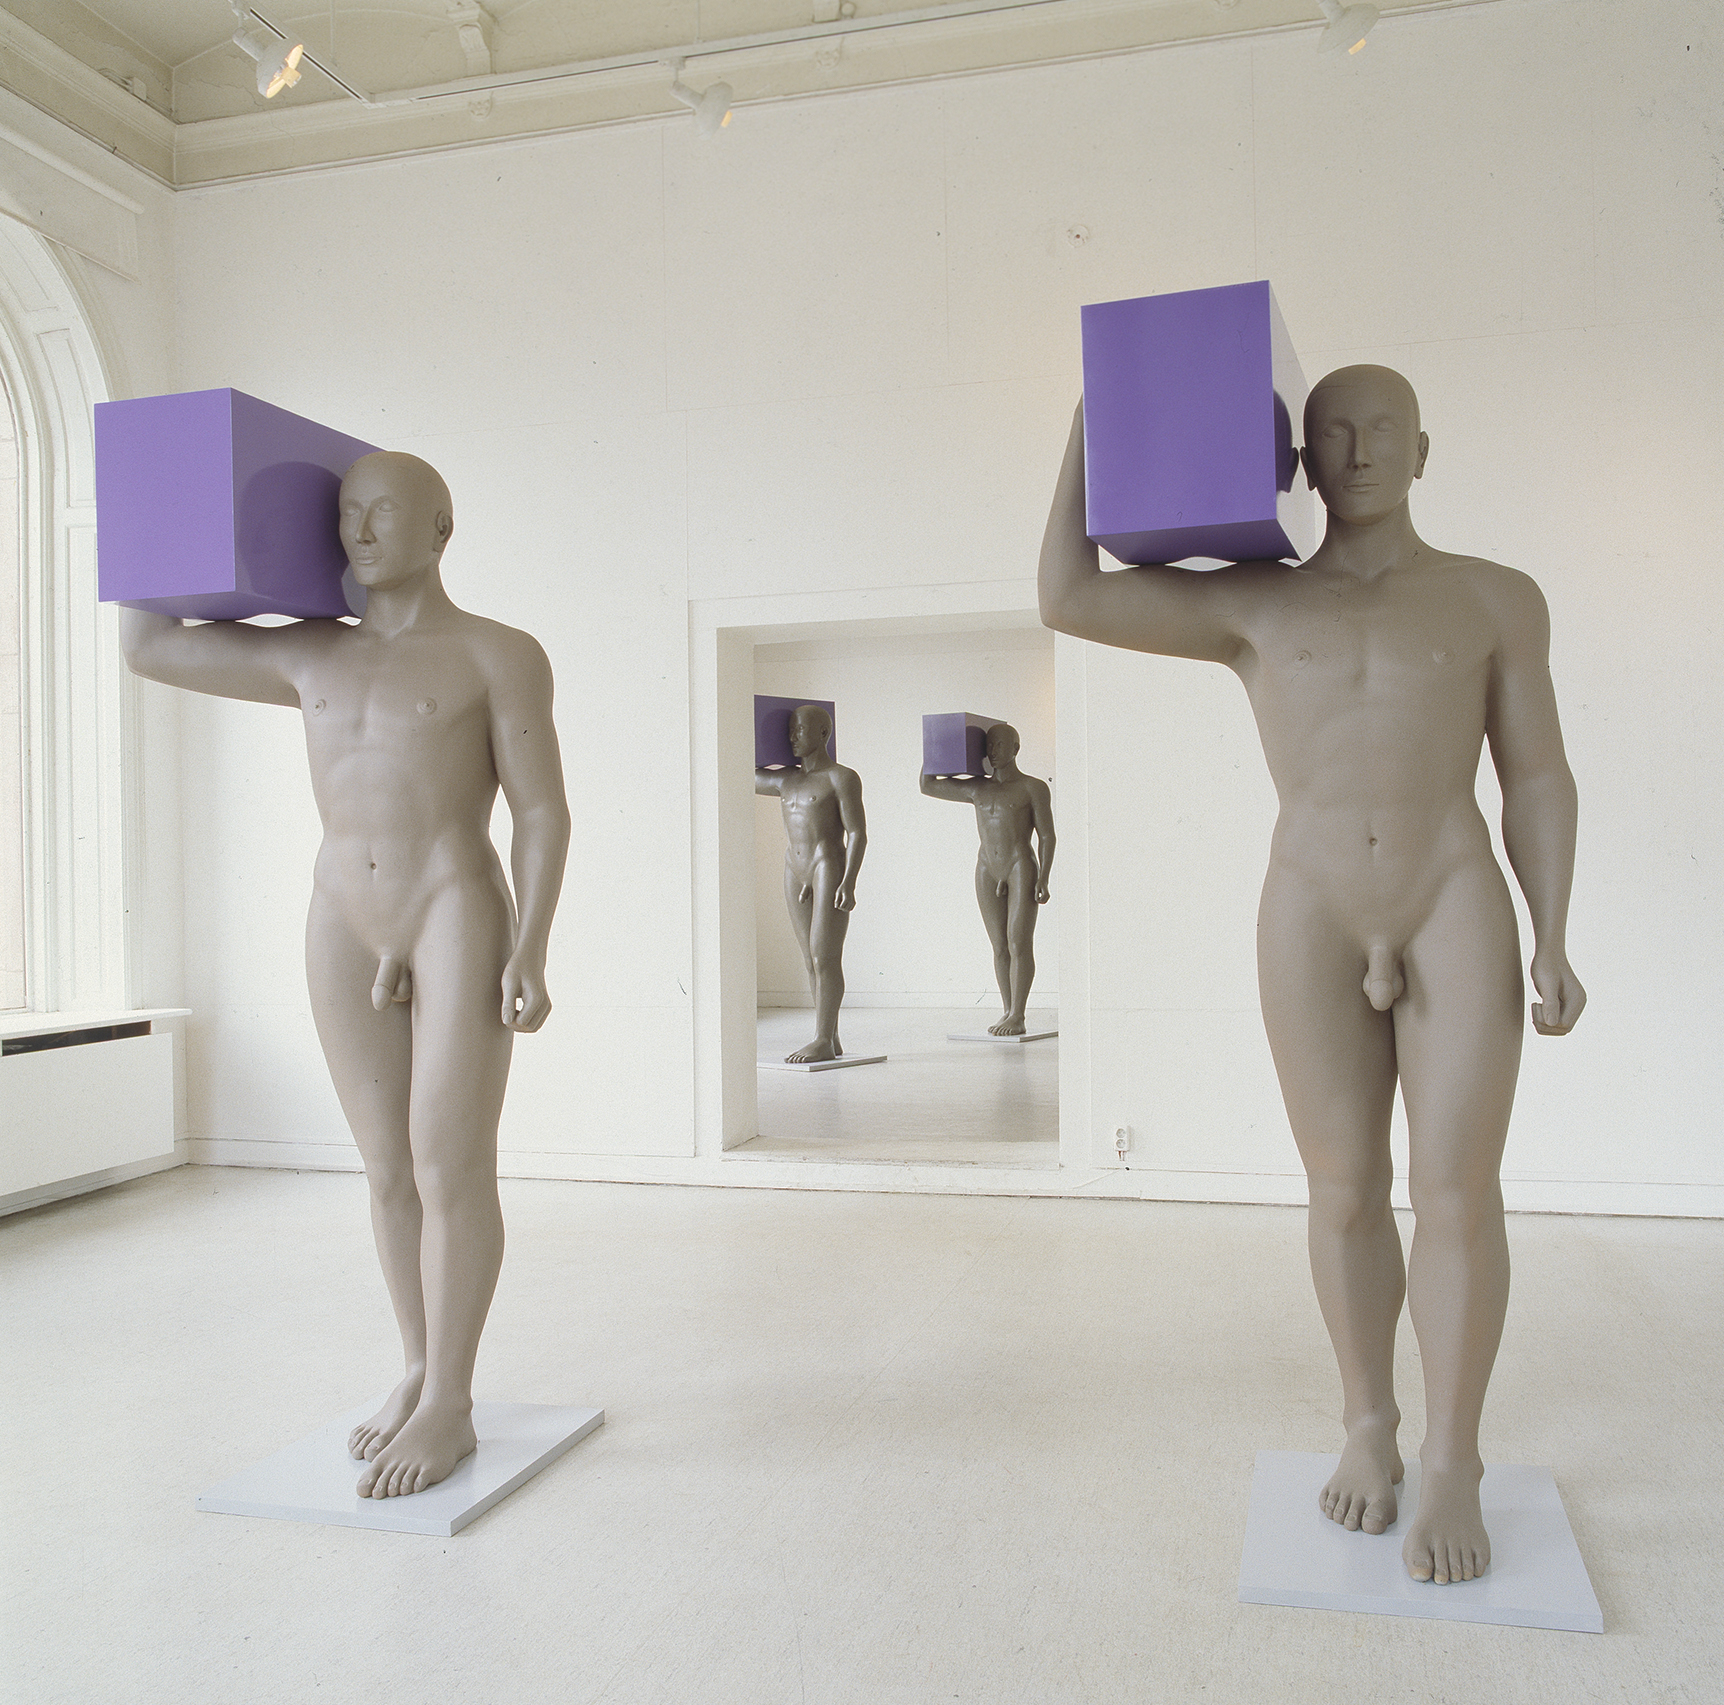 Four sculptures of men holding purple boxes